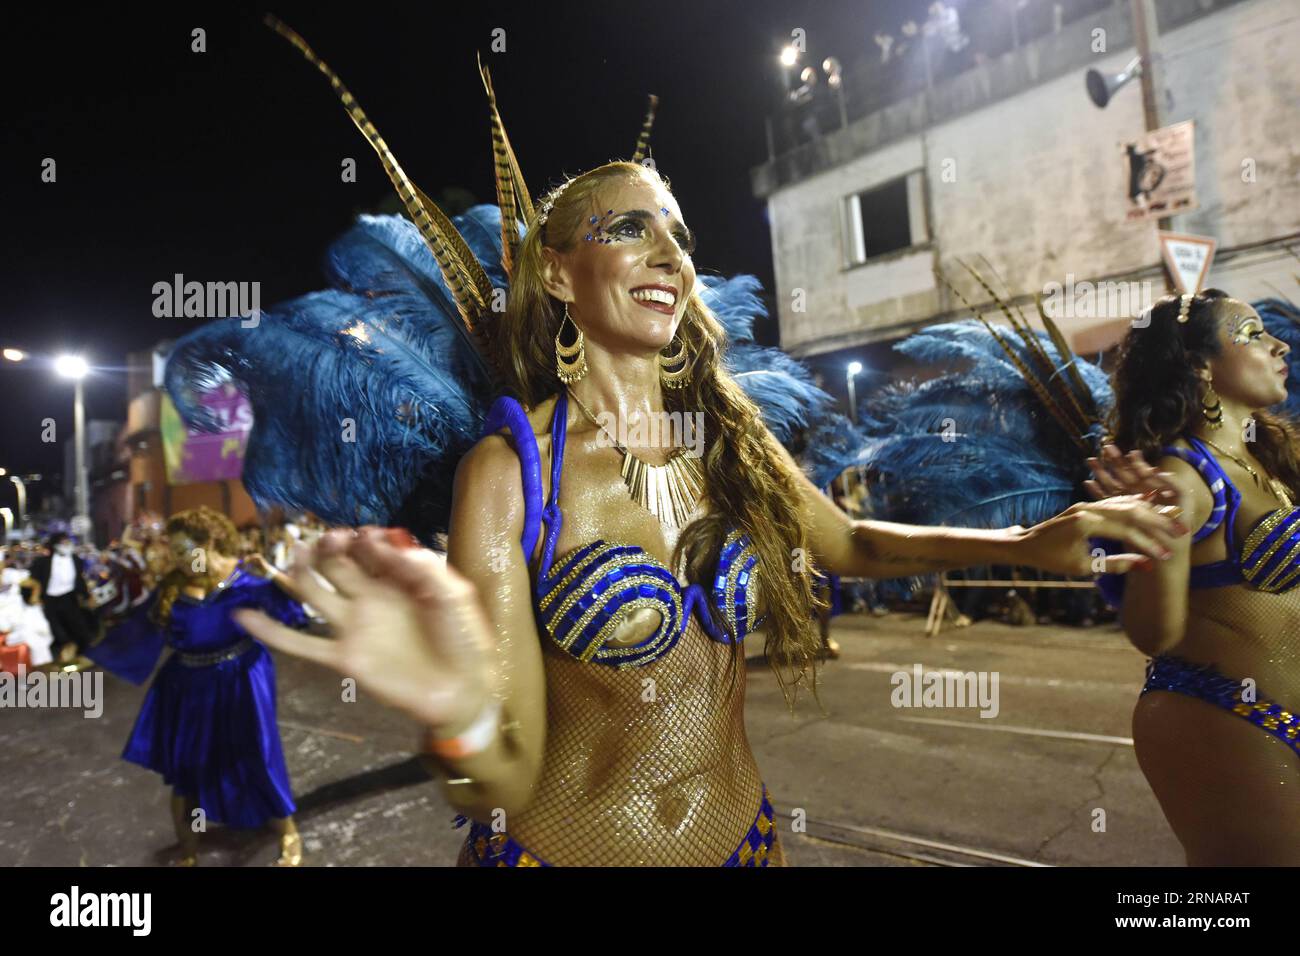 (160205) -- MONTEVIDEO, 5. Februar 2016 -- Eine Tänzerin der Gruppe La Facala nimmt an der Call Parade Teil, die im Rahmen des uruguayischen Karnevals am 4. Februar 2016 in den Straßen Carlos Gardel und Isla Flores in Montevideo, der Hauptstadt Uruguays, stattfindet. Die Top-Party der afrodescendant uruguayischen Gemeinde feierte ihr 60-jähriges Bestehen mit zwei Paraden am Donnerstag- und Freitagabend in den traditionellen südlichen und Palermo-Vierteln von Montevideo. Nicolas Celaya) (rtg) URUGUAY-MONTEVIDEO-SOCIETY-CARNIVAL e NICOLASxCELAYA PUBLICATIONxNOTxINxCHN Montevideo 5. Februar 2016 ein Tänzer der Gruppe La partici Stockfoto